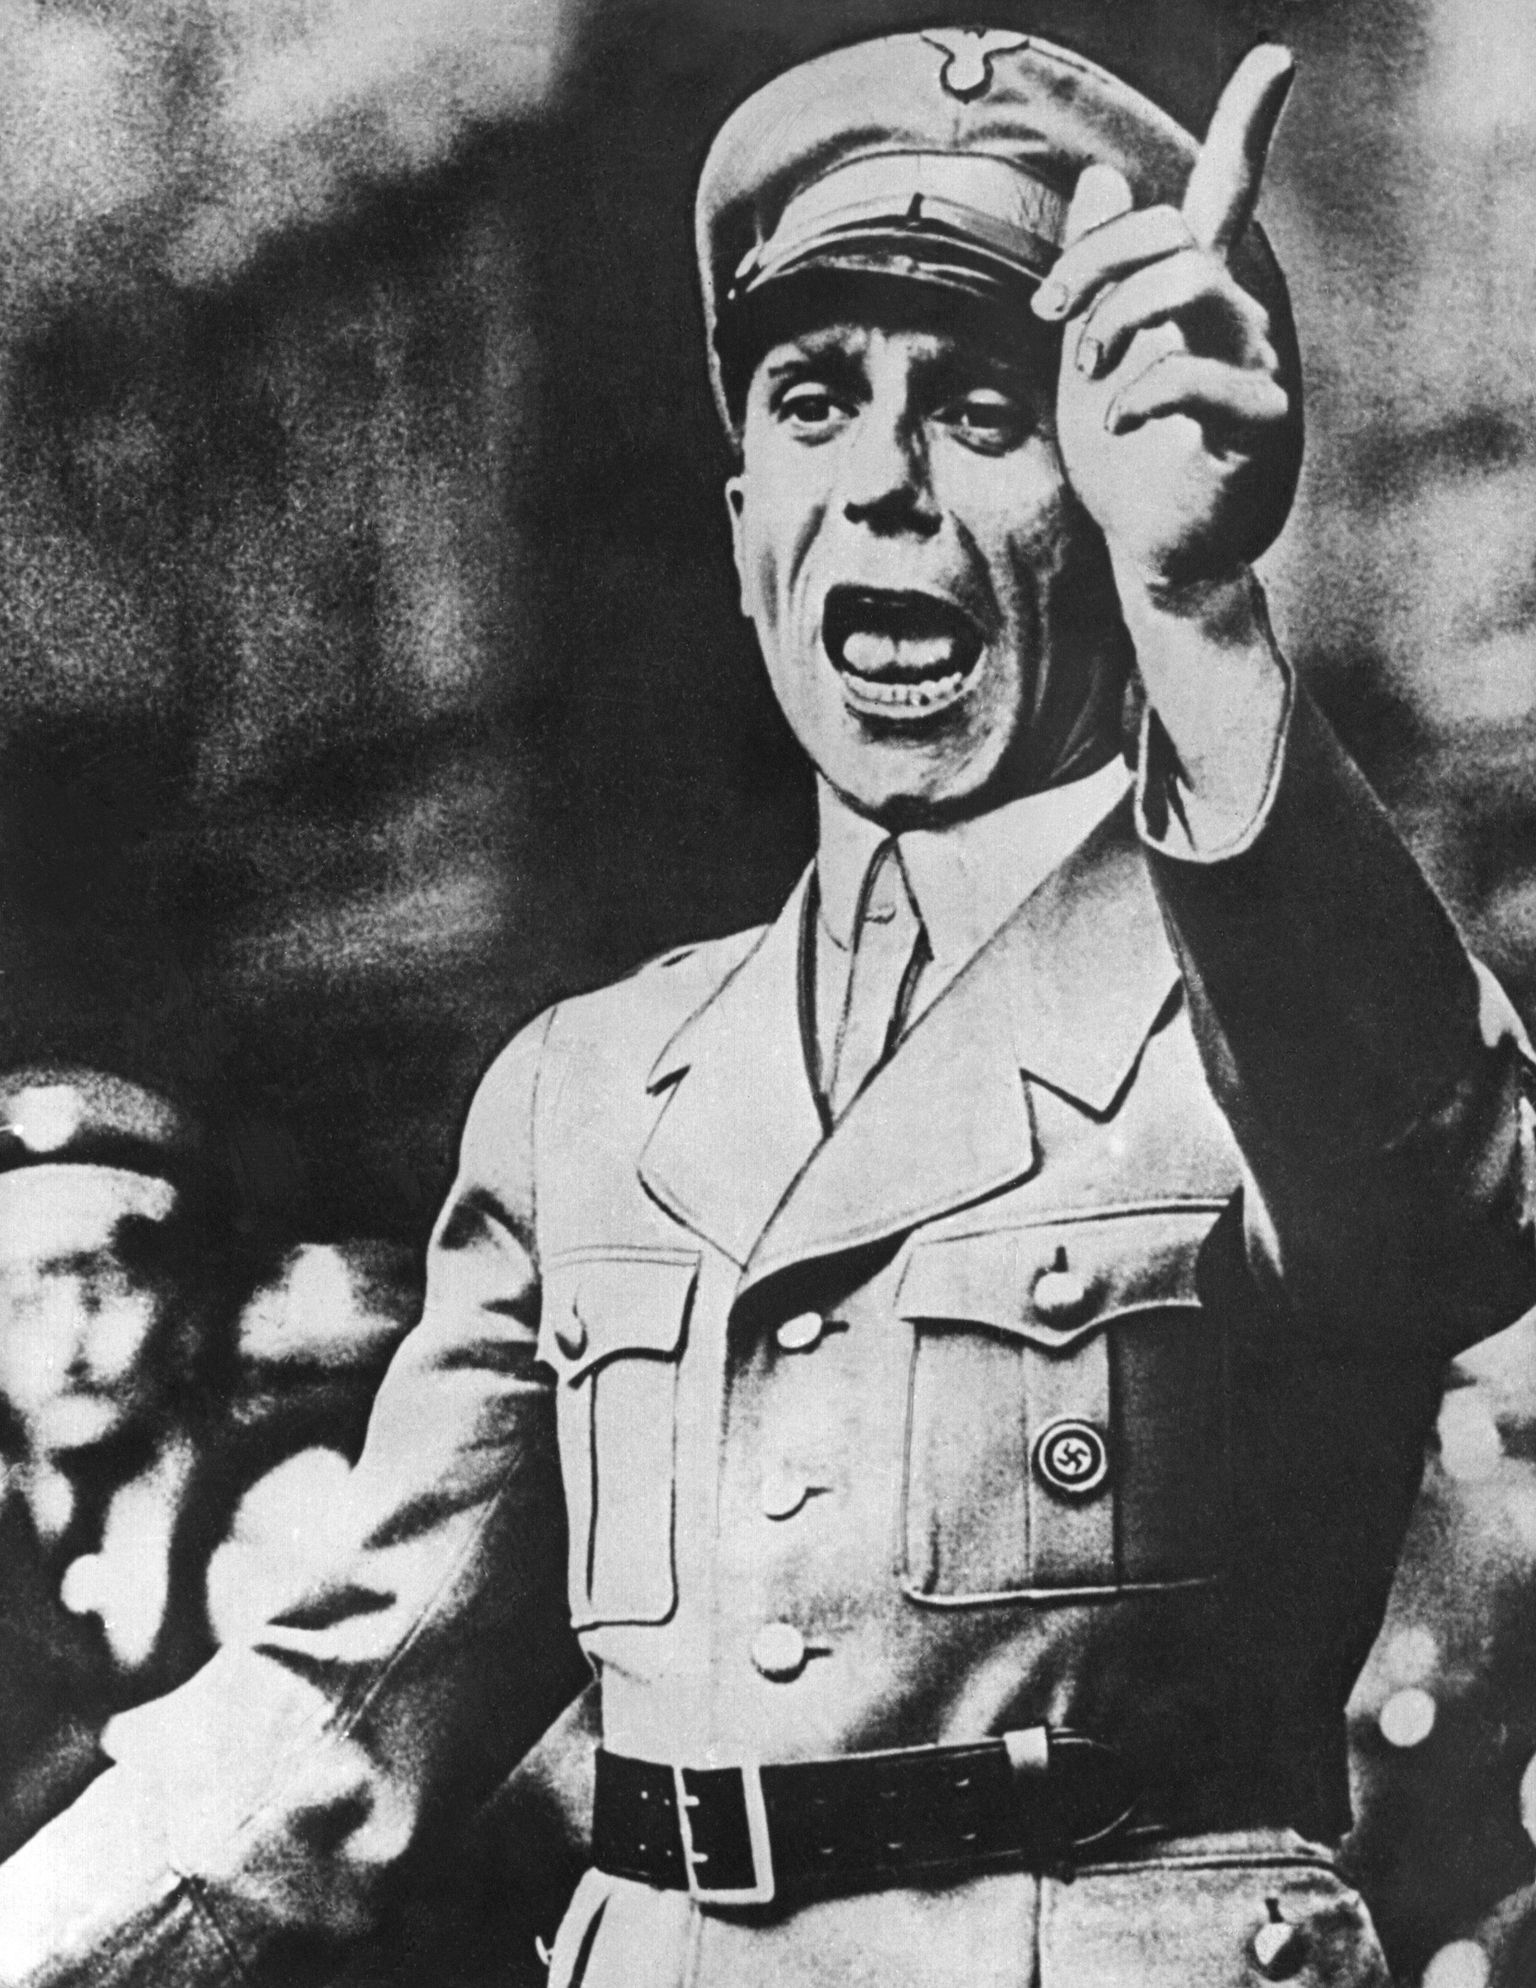 Joseph Goebbels kõnet pidamas.